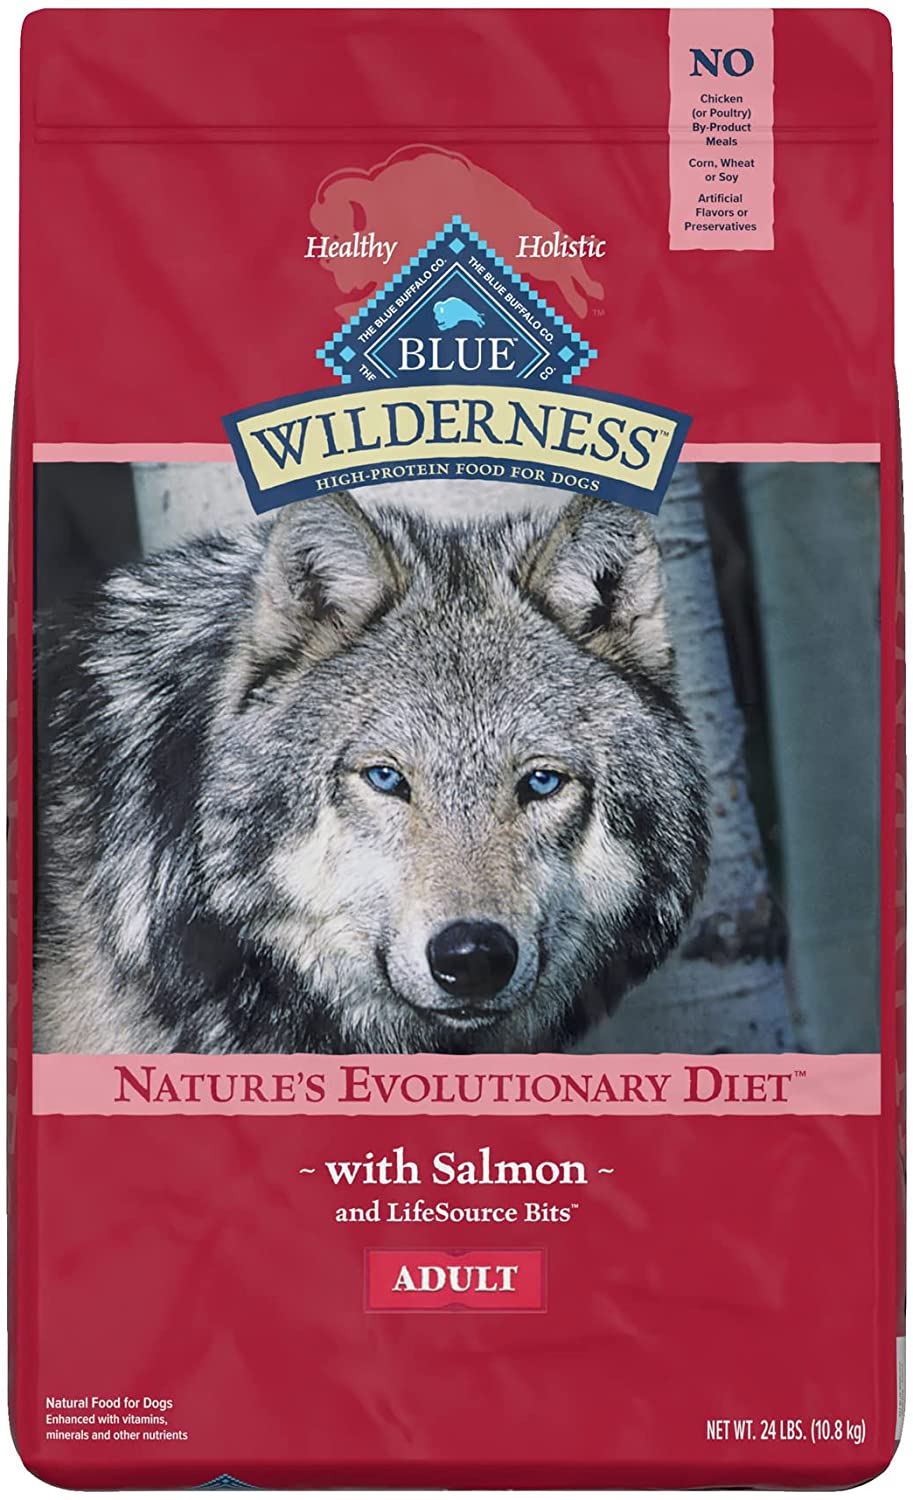 Blue Buffalo Wilderness Dog Food - 10.8 kg-1